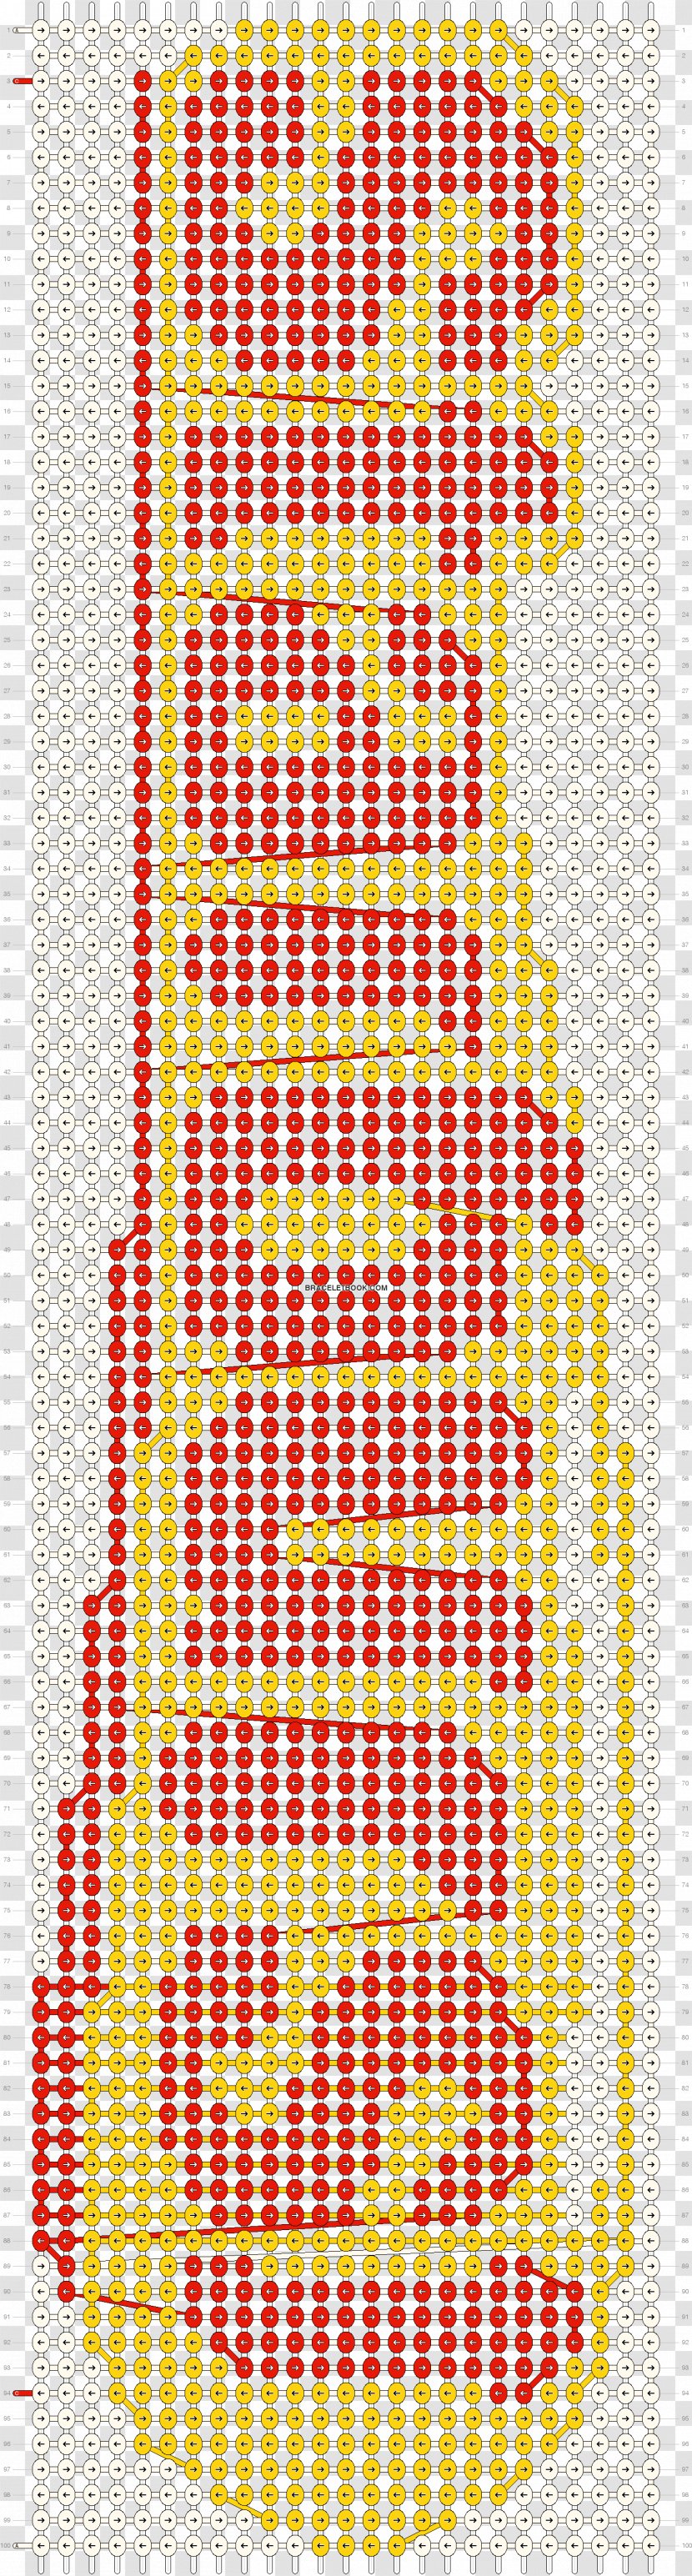 Friendship Bracelet Stencil Logo Pattern - Text - FRIENDSHIP BRACELET Transparent PNG